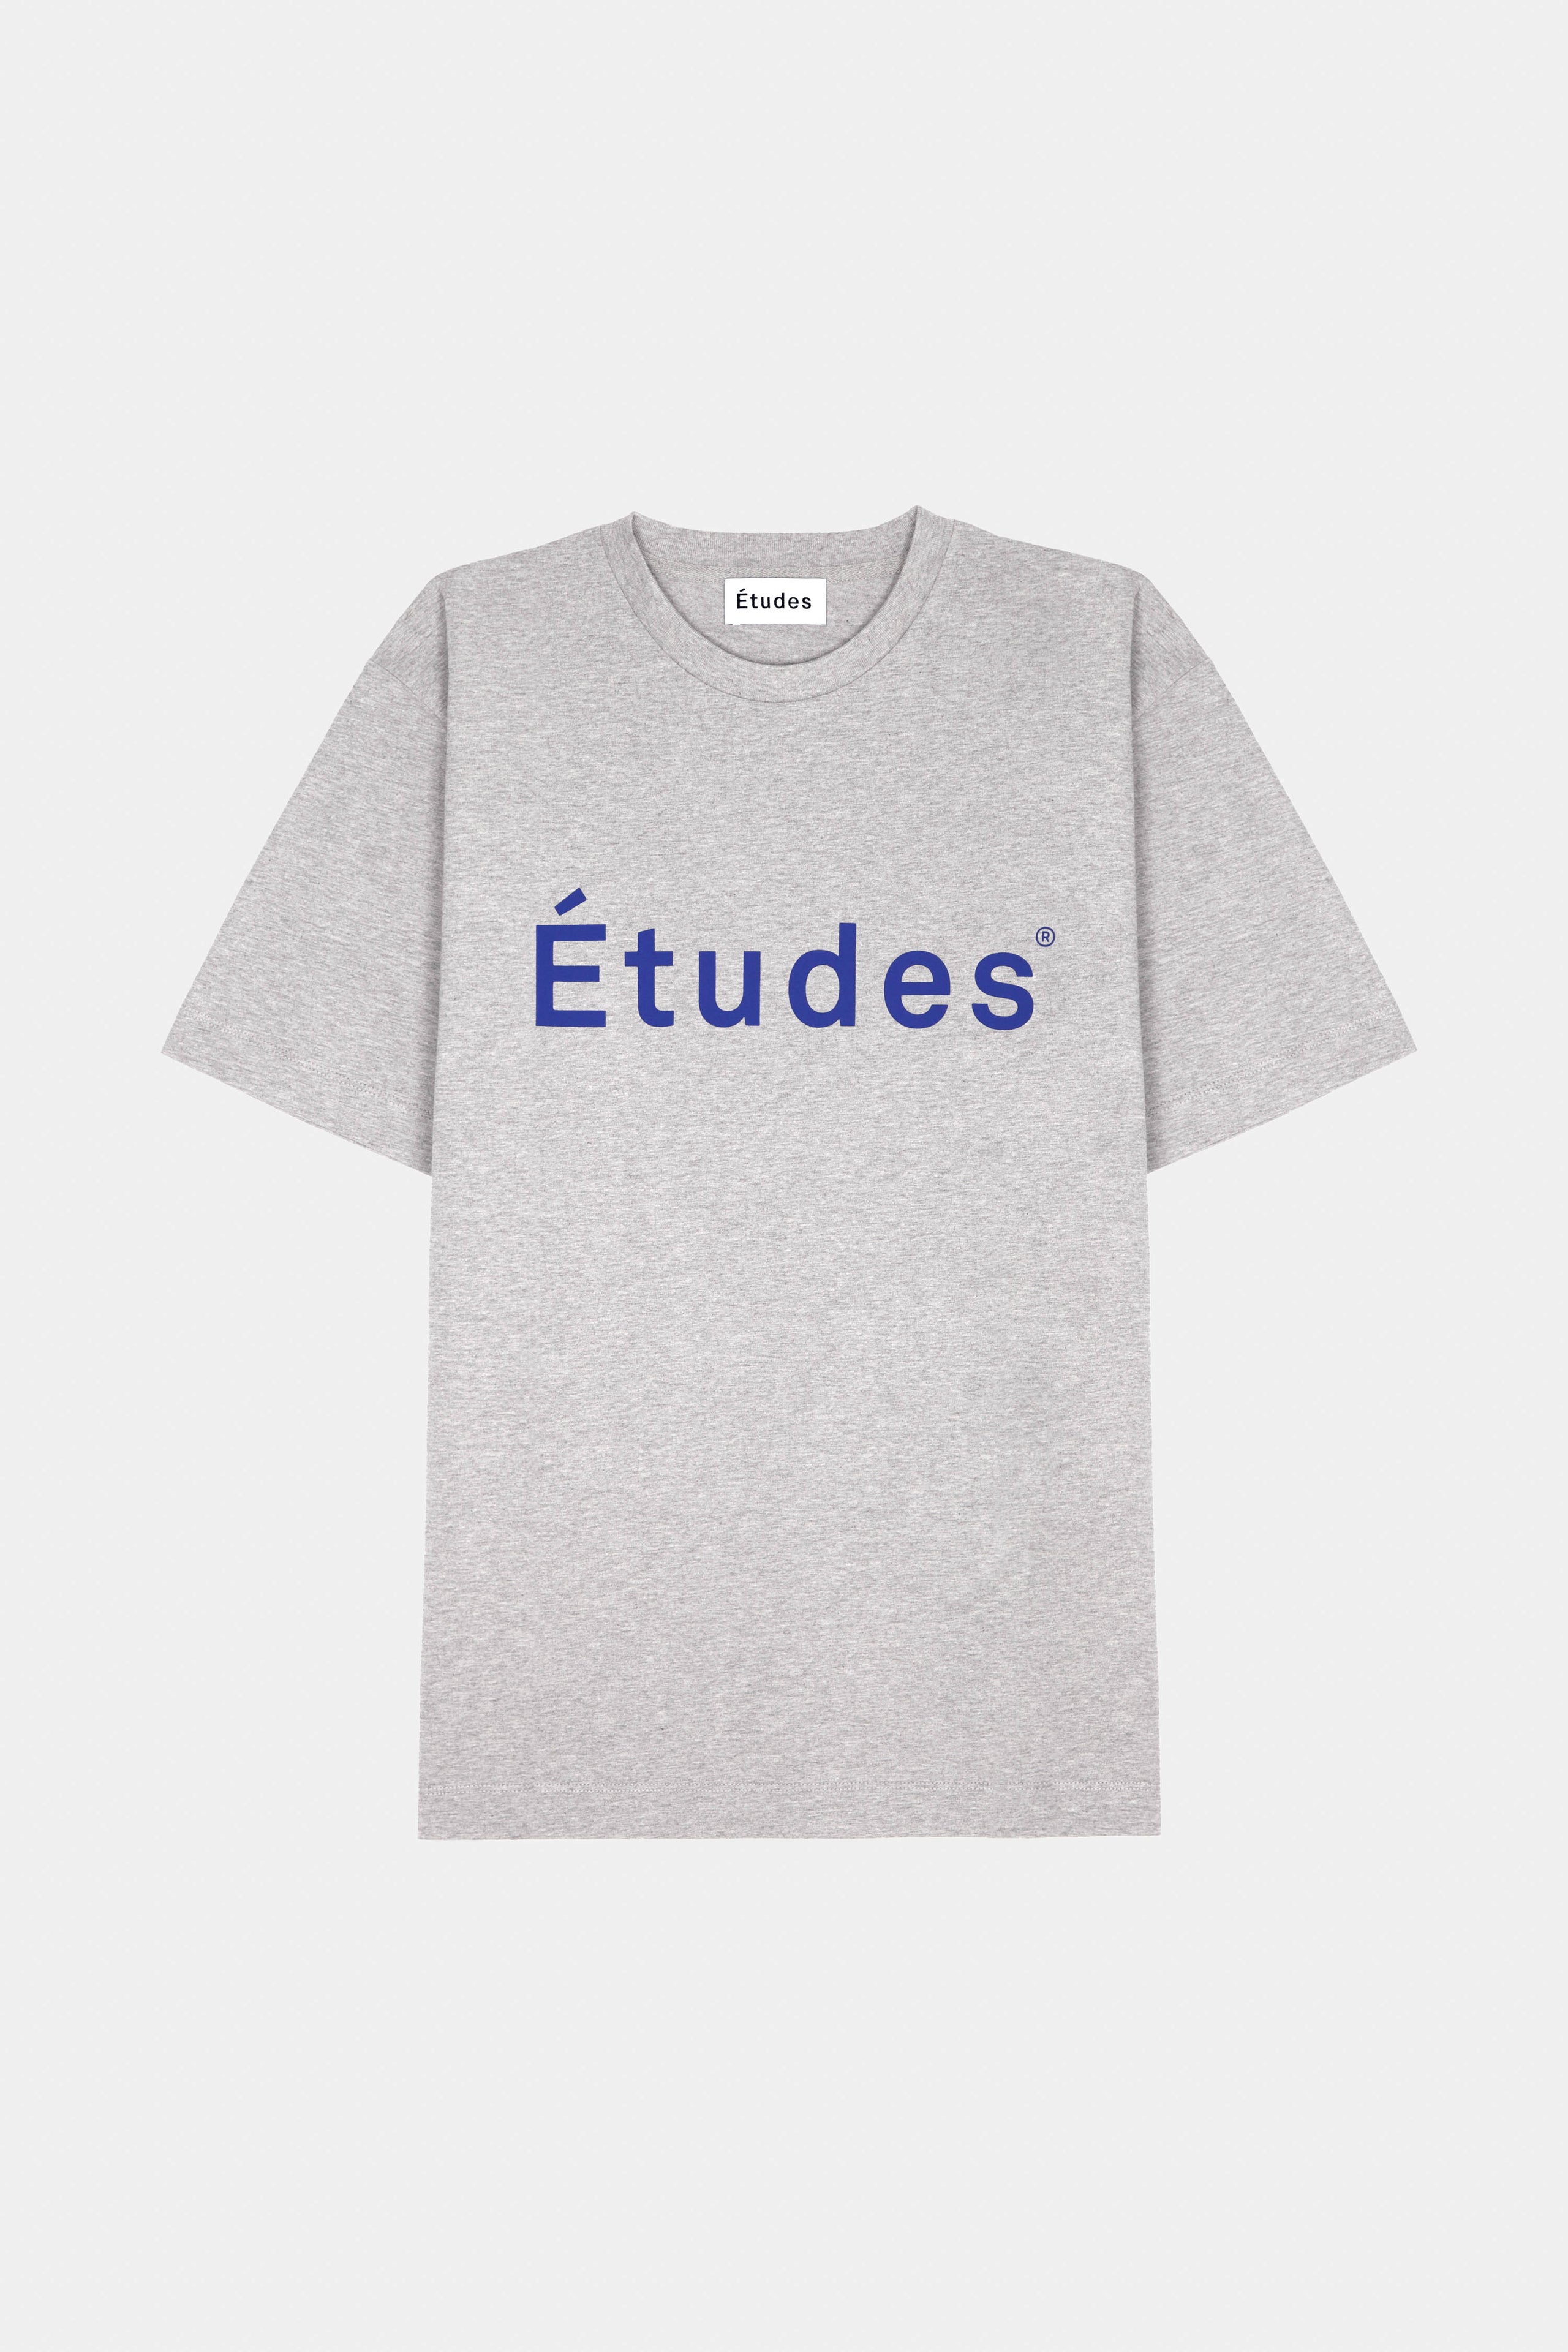 Études WONDER ETUDES HEATHER GREY T-shirt 2